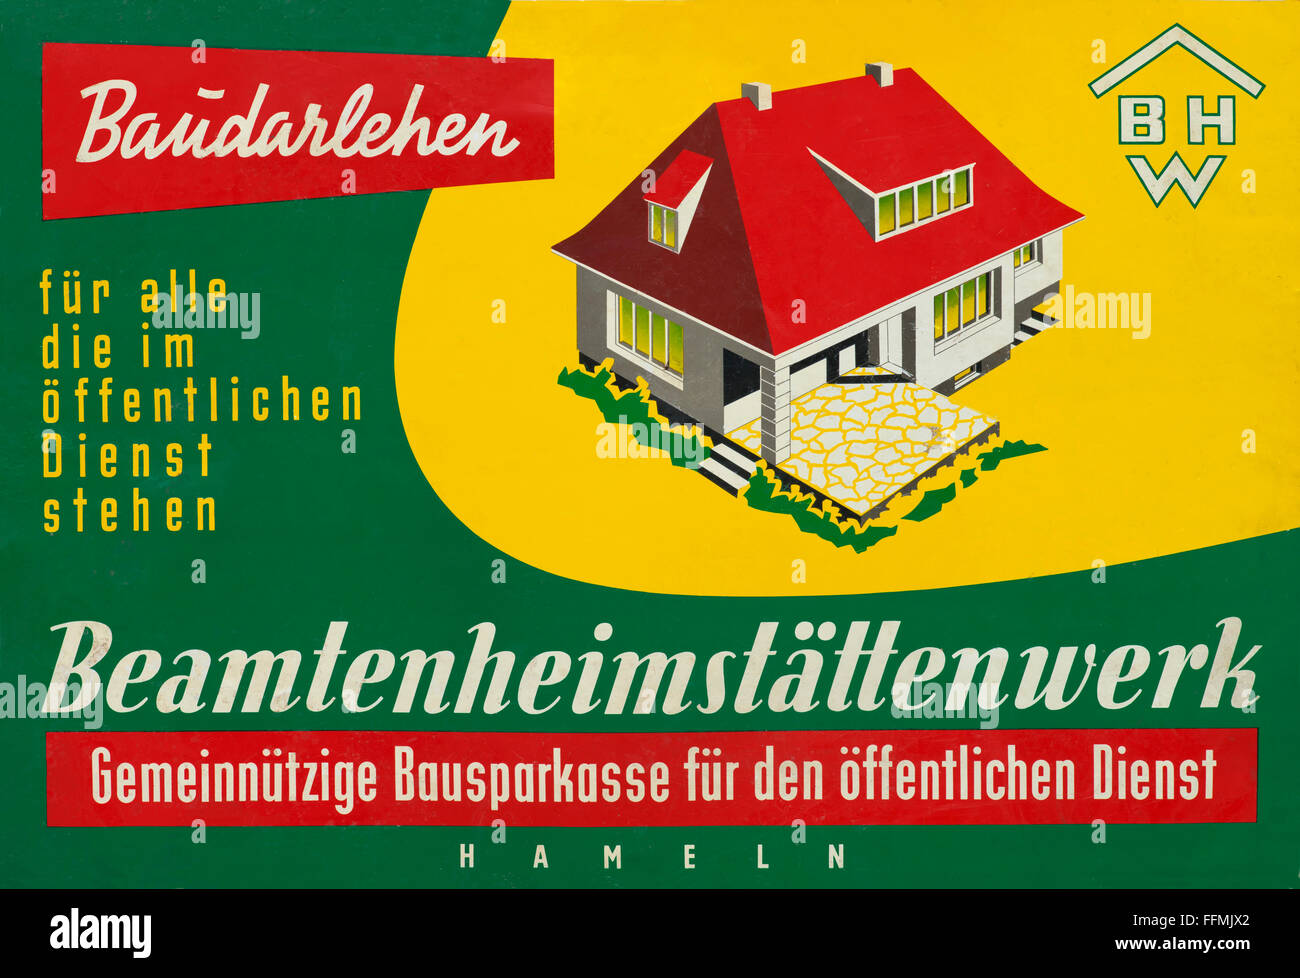 Pubblicità, pubblicità per la società edile, BHW, Beamtenheimstaettenwerk, Hameln, fondata nel 1928, società edile per funzionari pubblici, società edile senza scopo di lucro per il servizio pubblico, Germania, circa 1958, diritti aggiuntivi-clearences-non disponibili Foto Stock